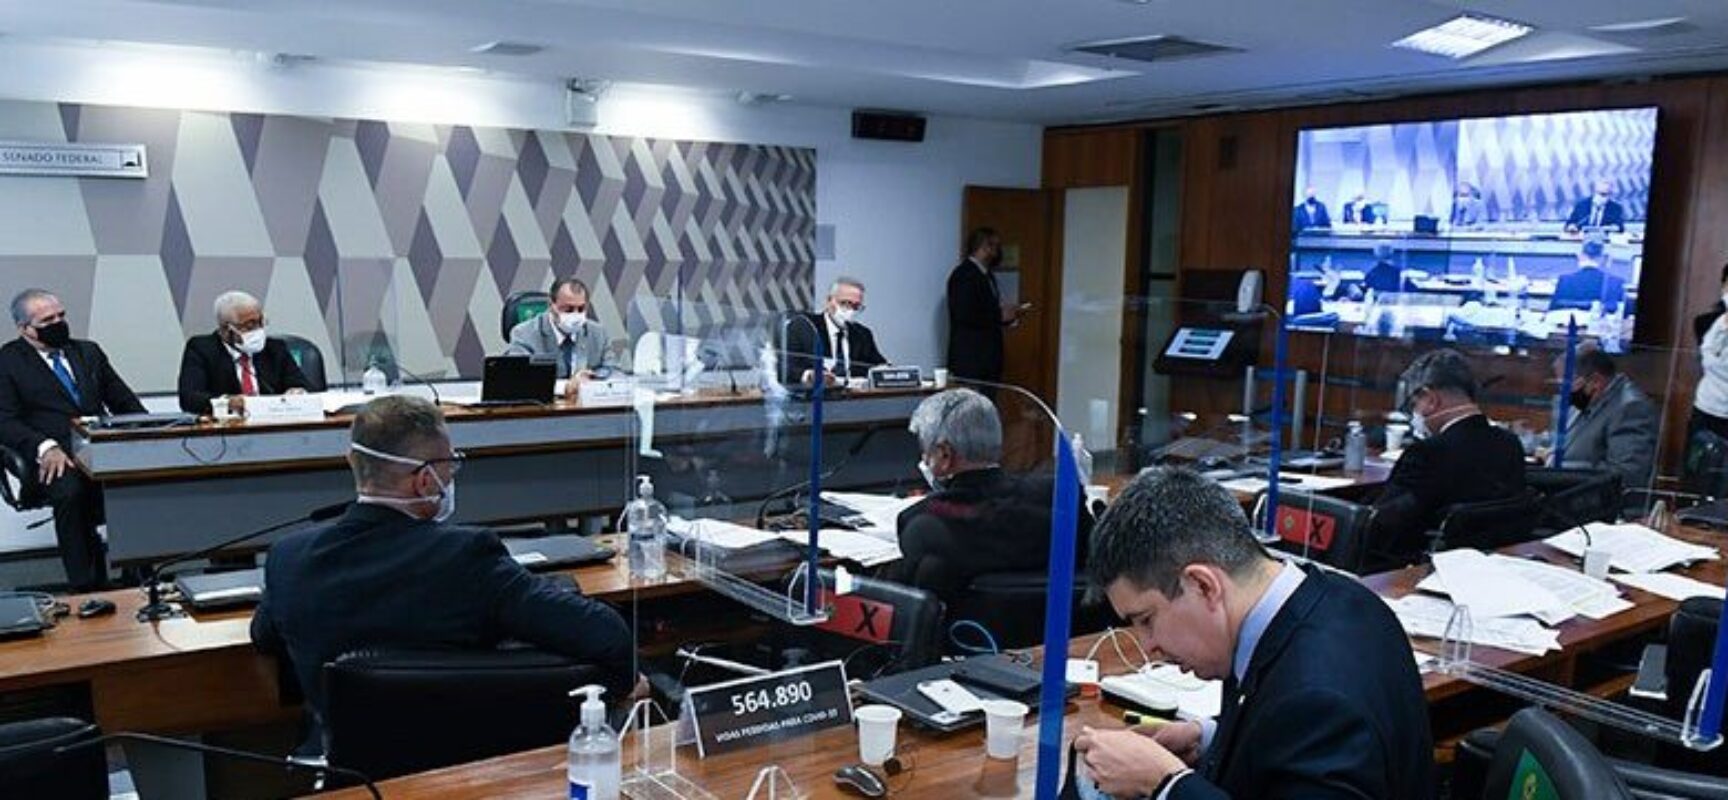 Senadores acreditam que CPI já tem elementos para indiciar Bolsonaro